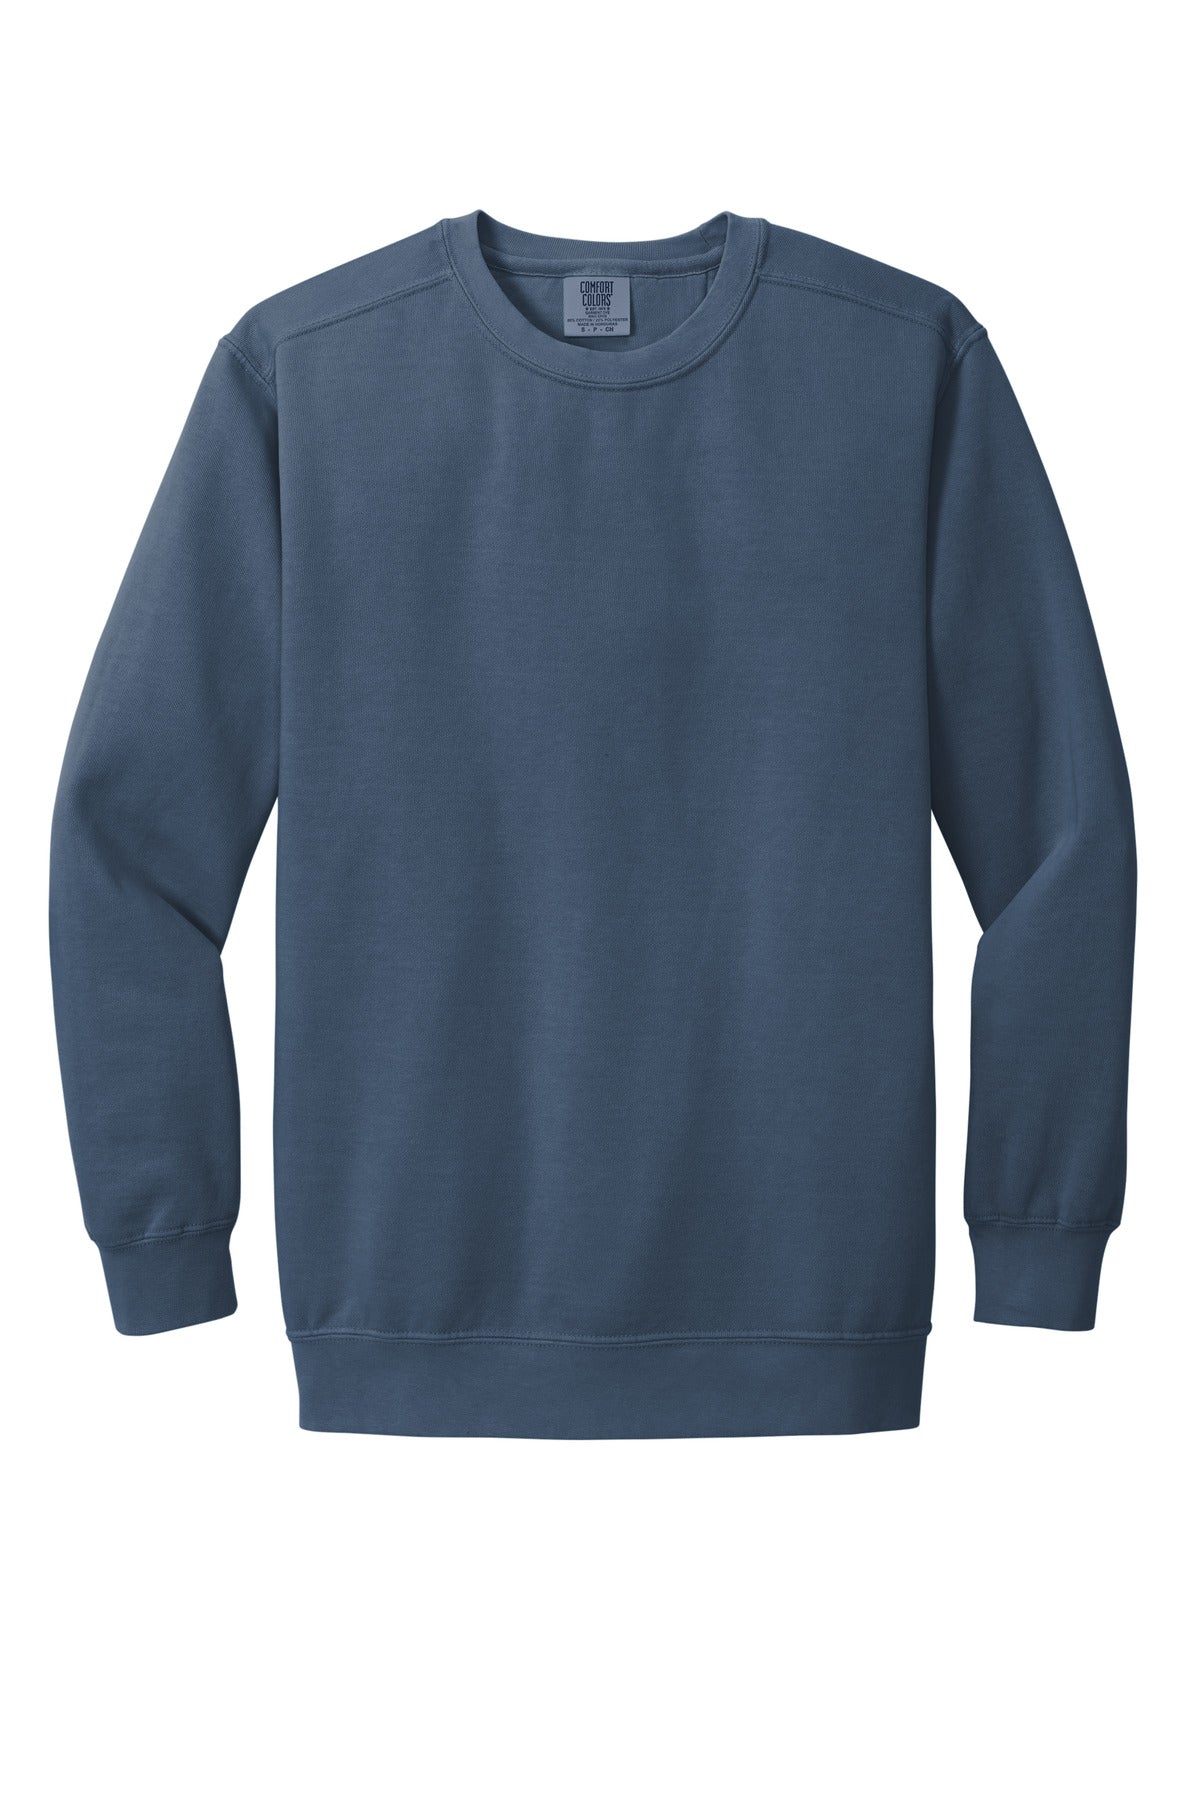 COMFORT COLORS Ring Spun Crewneck Sweatshirt. 1566 - BT Imprintables Shirts